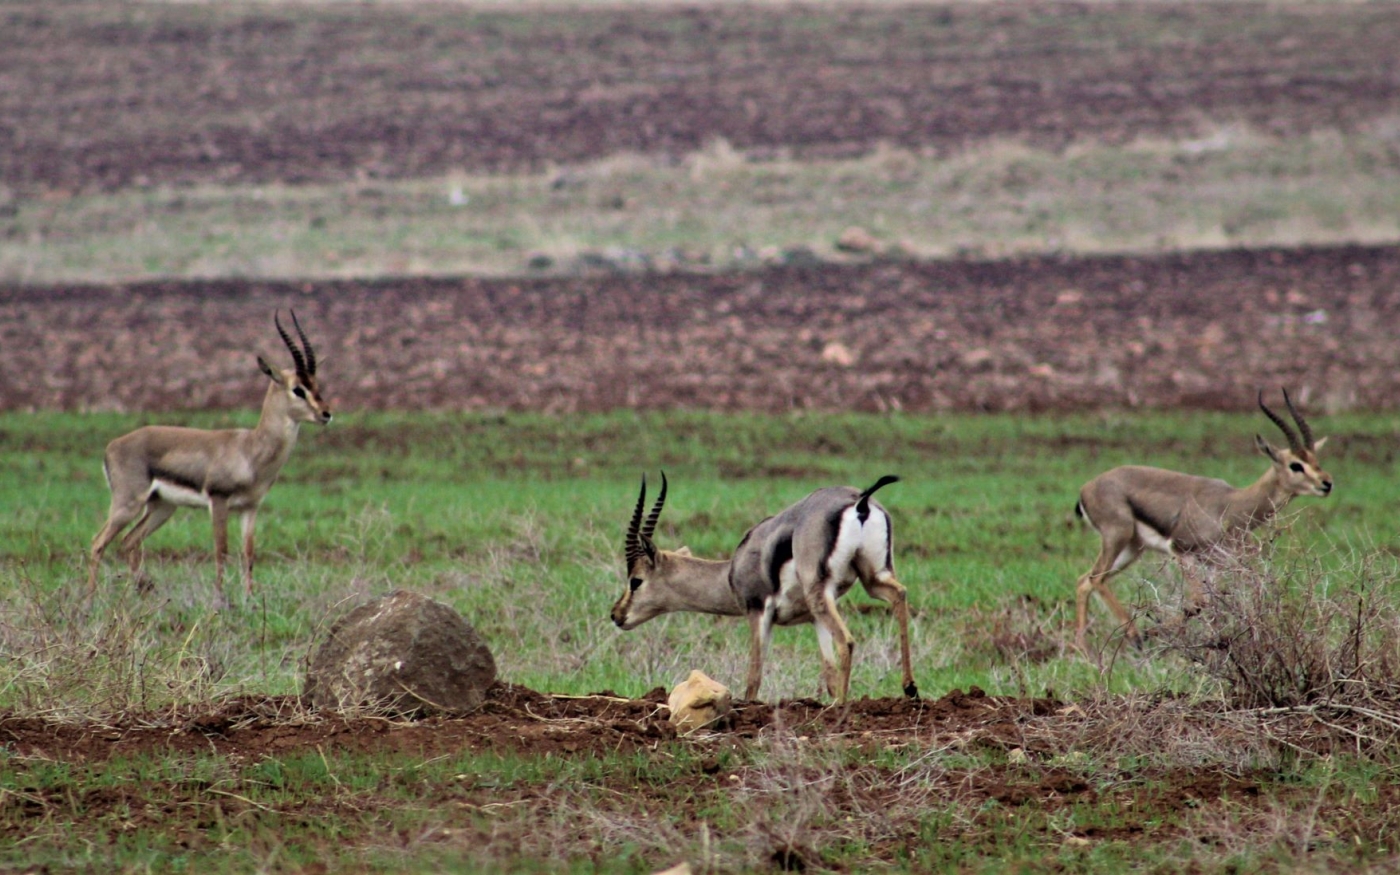 Des gazelles mâles se prêtent aux rituels lors du rut, ils peuvent alors atteindre 80 km/h (MEE/Nimet Kıraç)